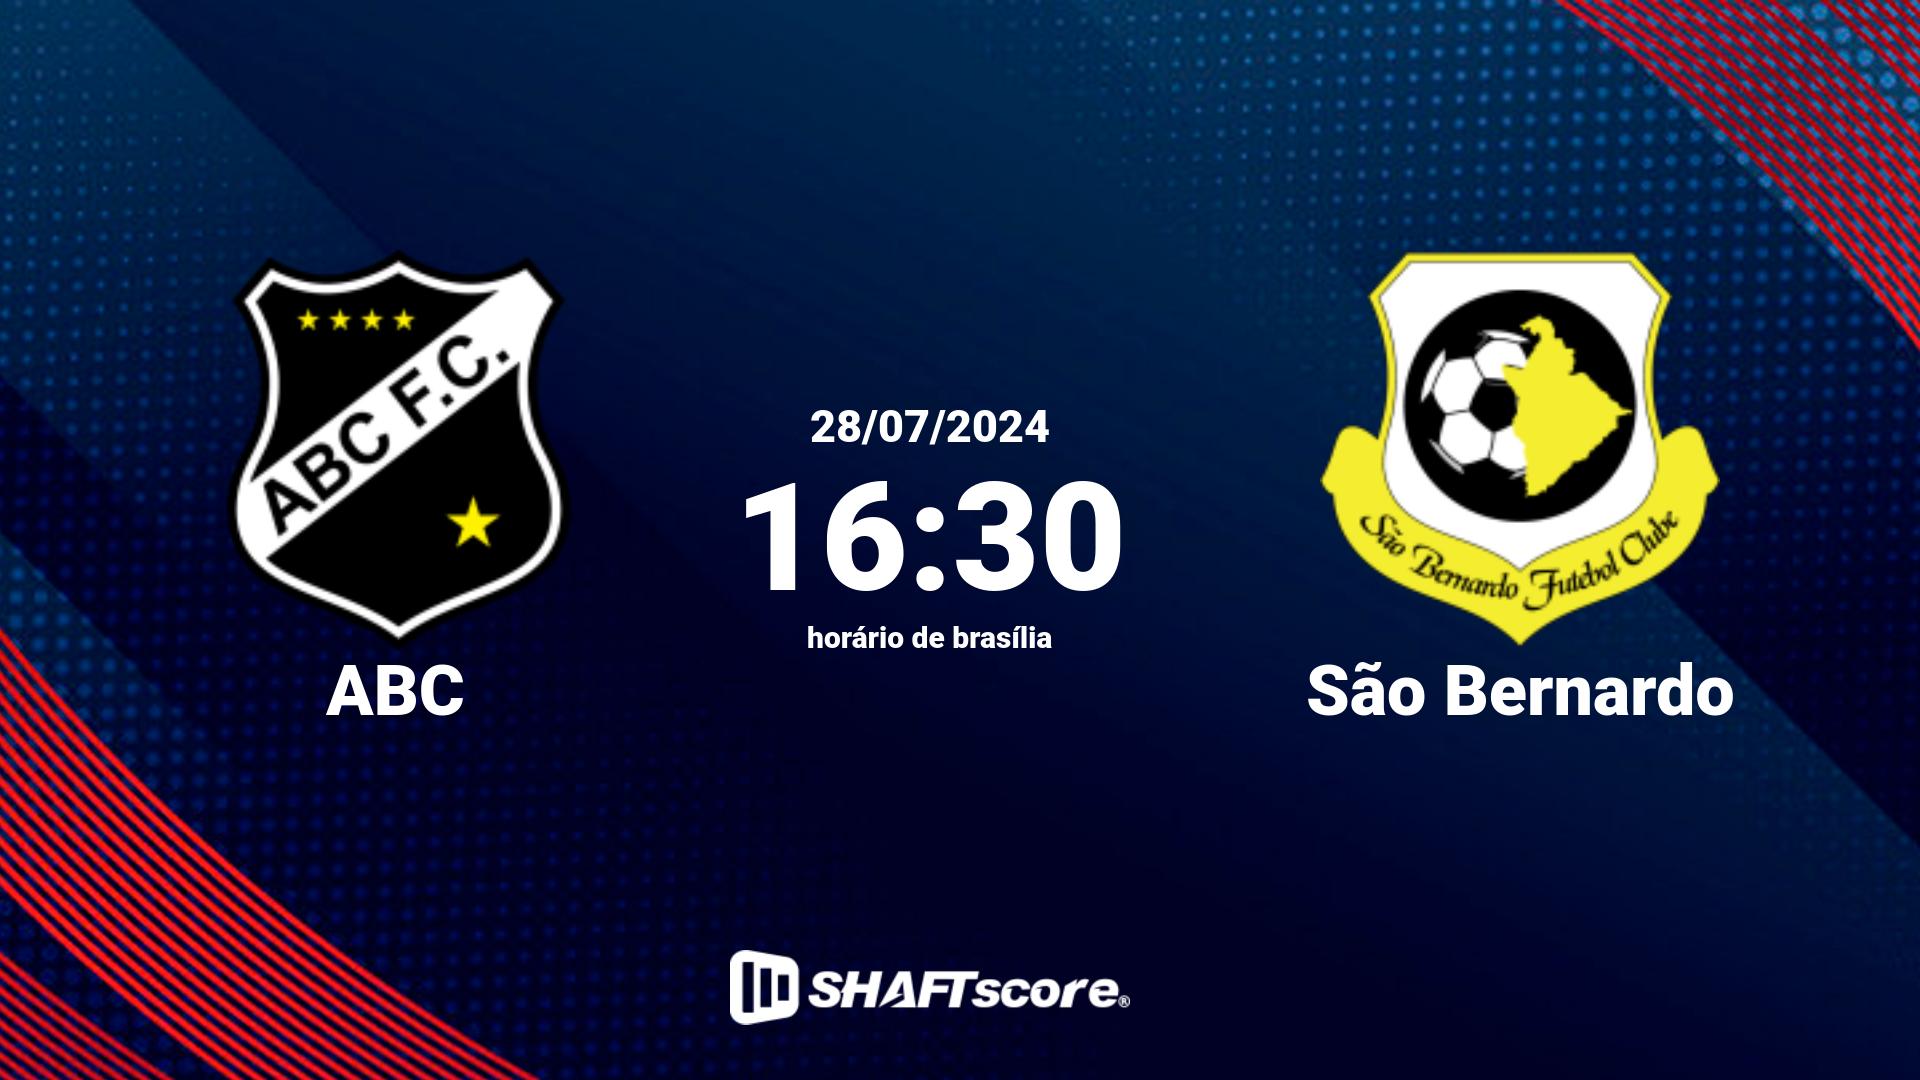 Estatísticas do jogo ABC vs São Bernardo 28.07 16:30